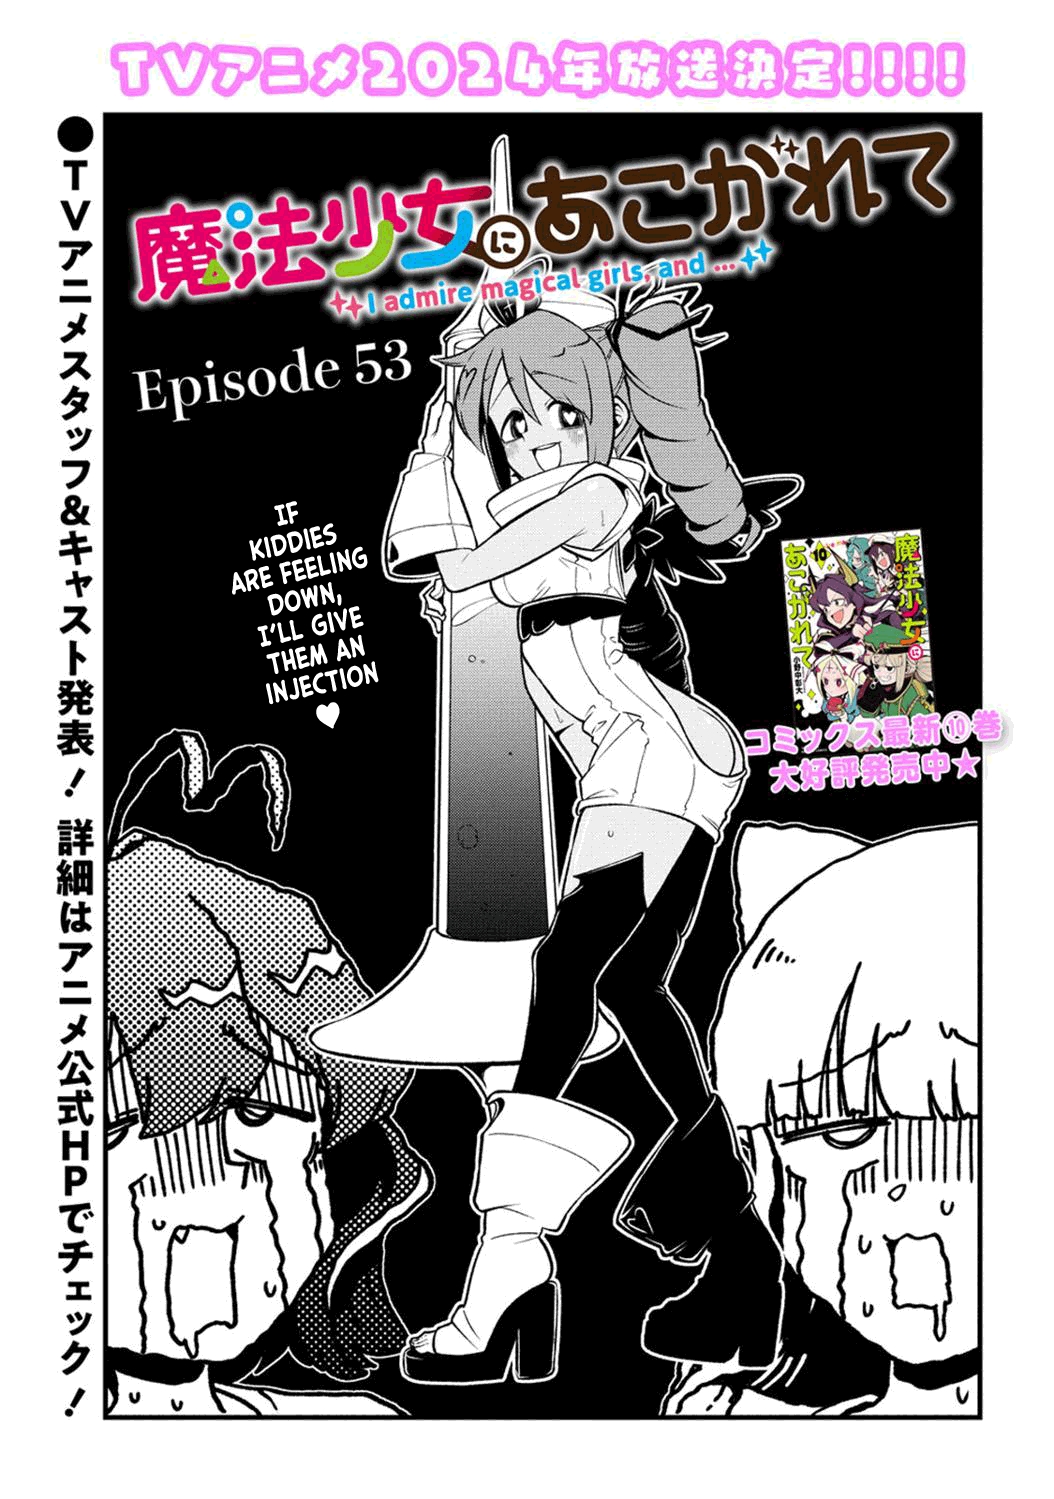 Mahou Shoujo ni Akogarete 36, Mahou Shoujo ni Akogarete 36 Page 1 - Read  Free Manga Online at Ten Manga